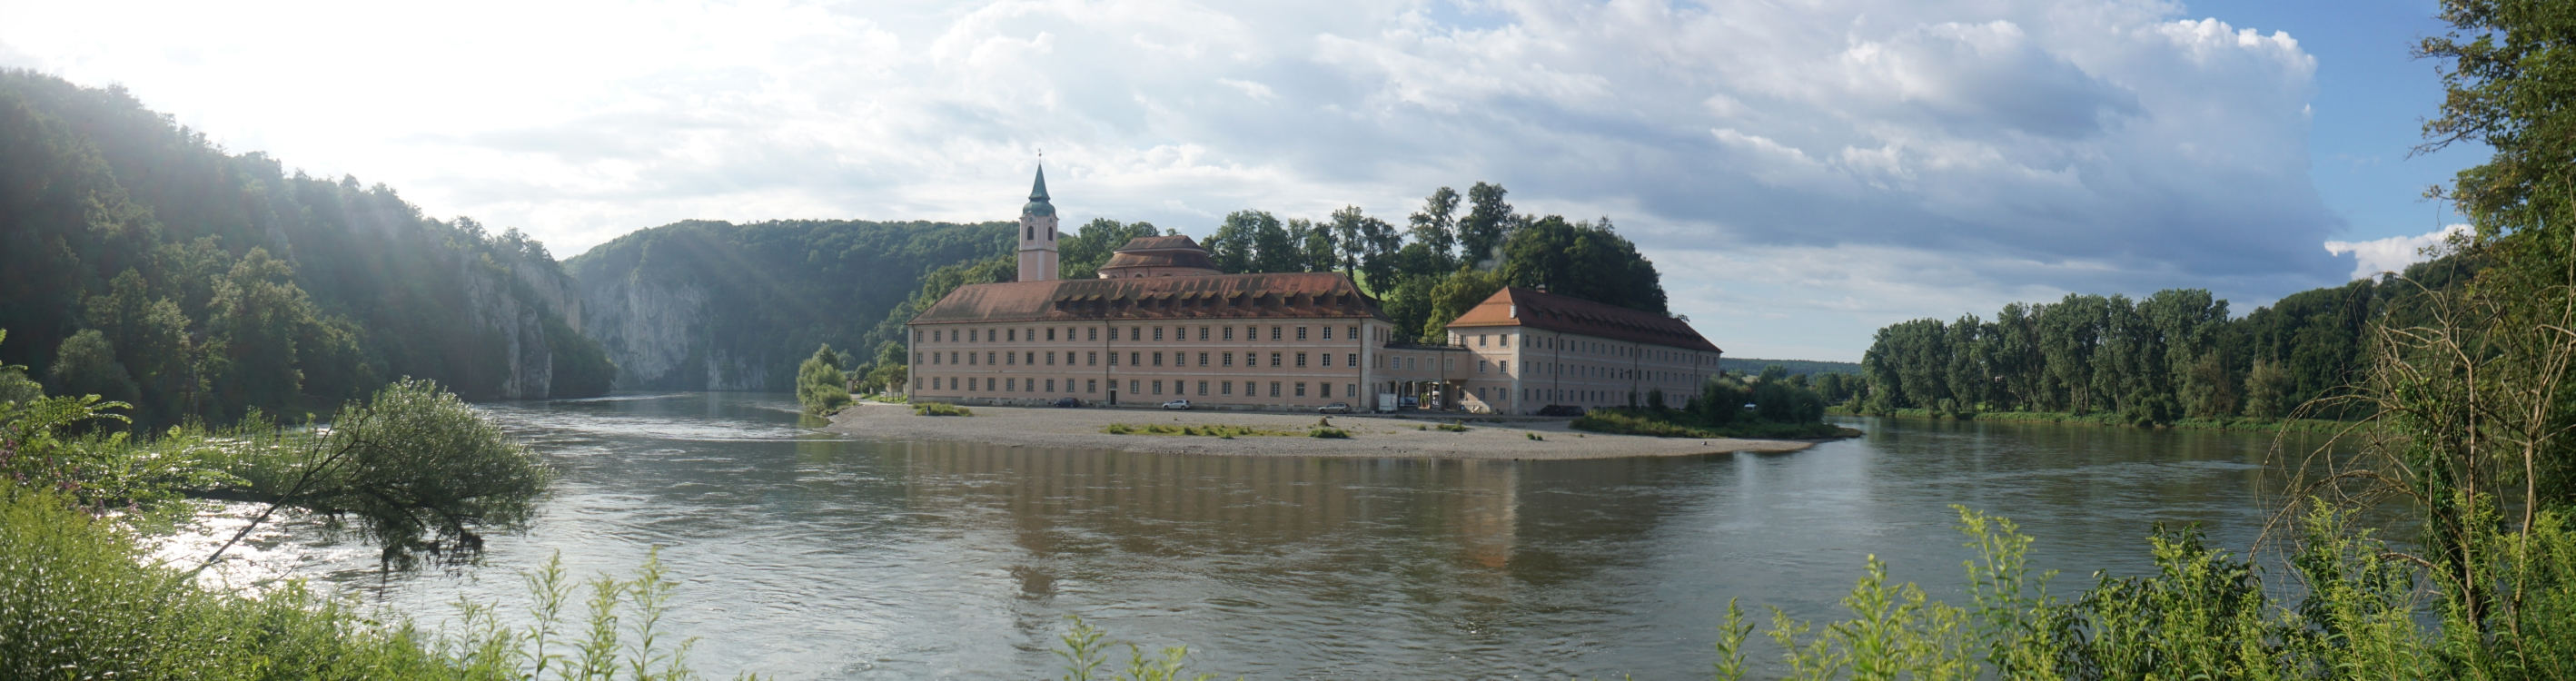 Das Kloster Weltenburg an der Donau bei Kelheim.